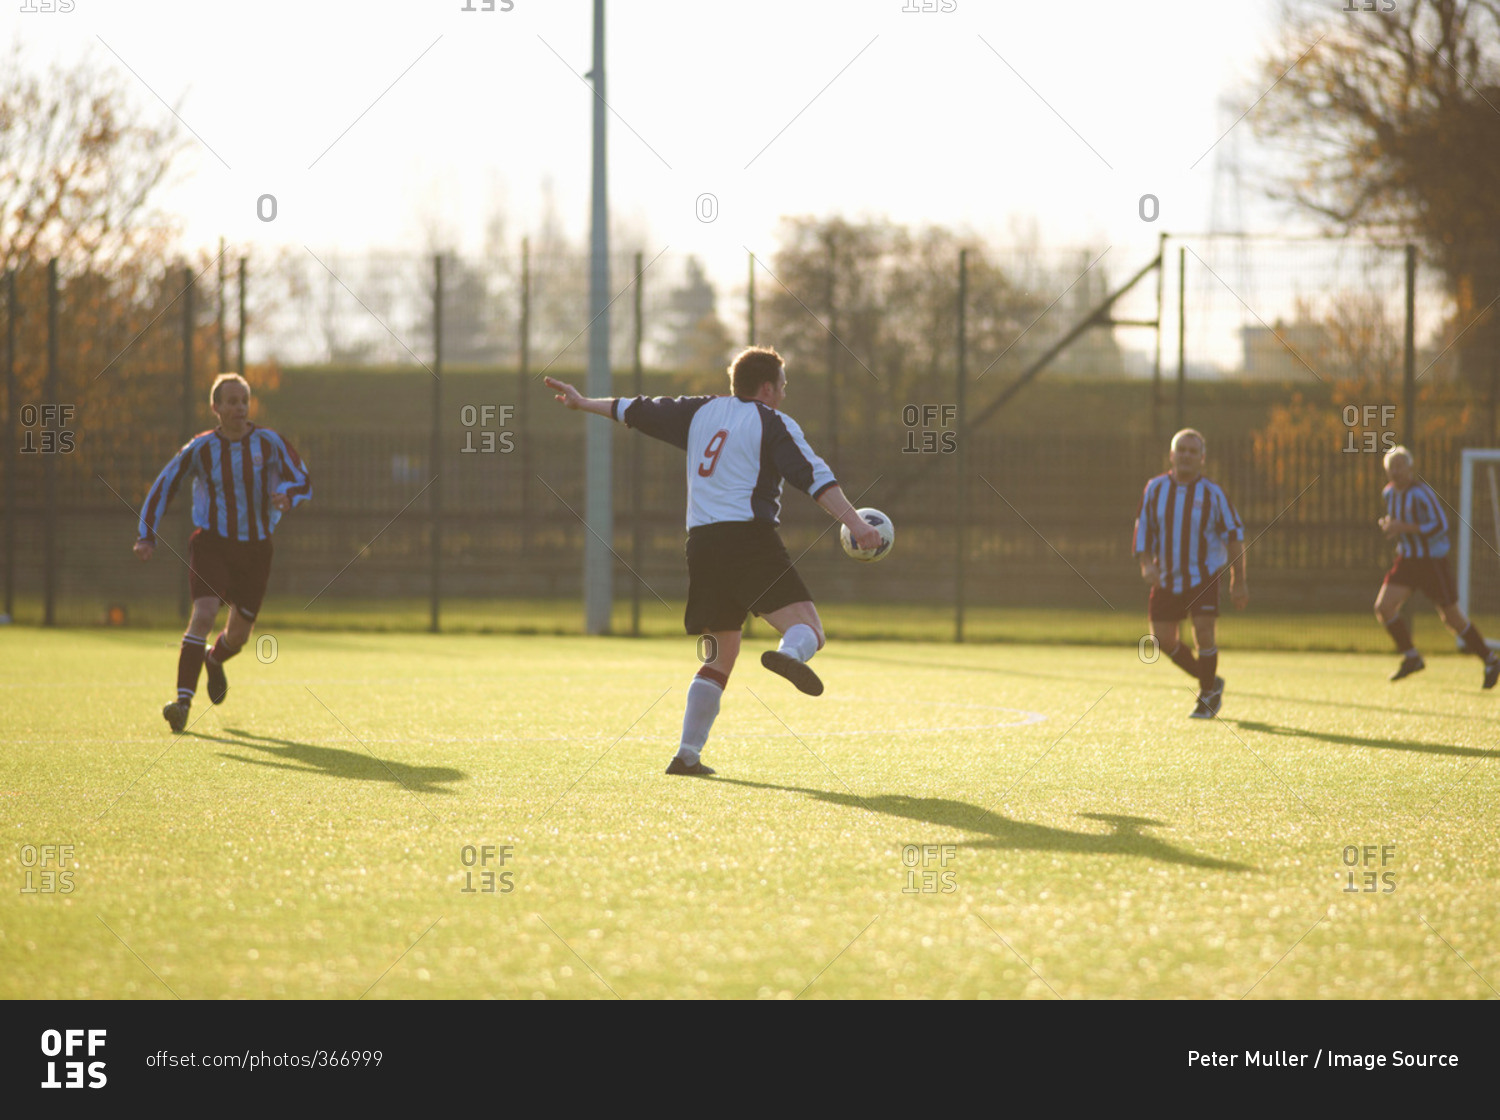 Soccer player kicking a high ball